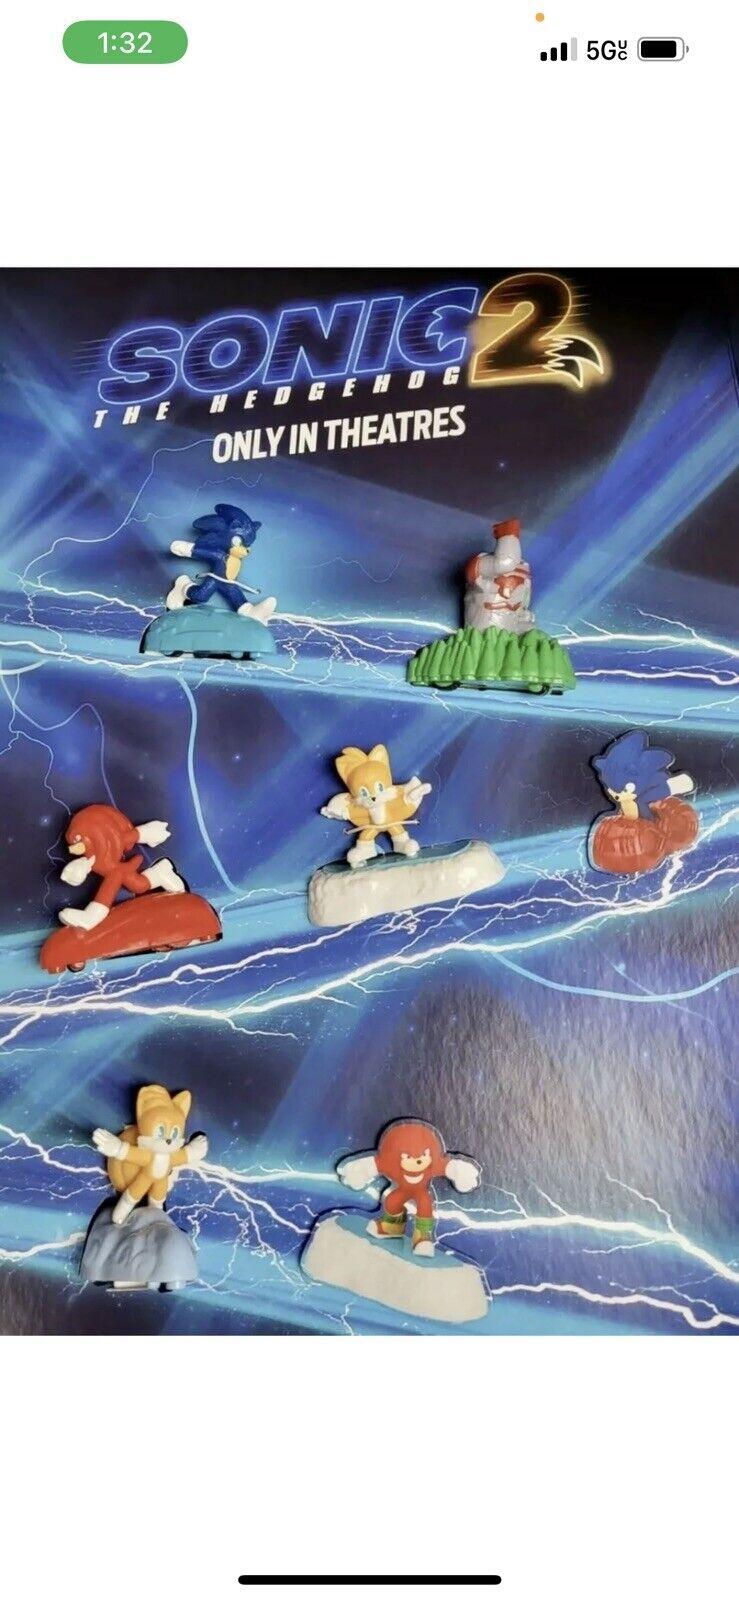 Tails Filme Sonic 2, Brinquedo Mcdonalds Nunca Usado 92592749